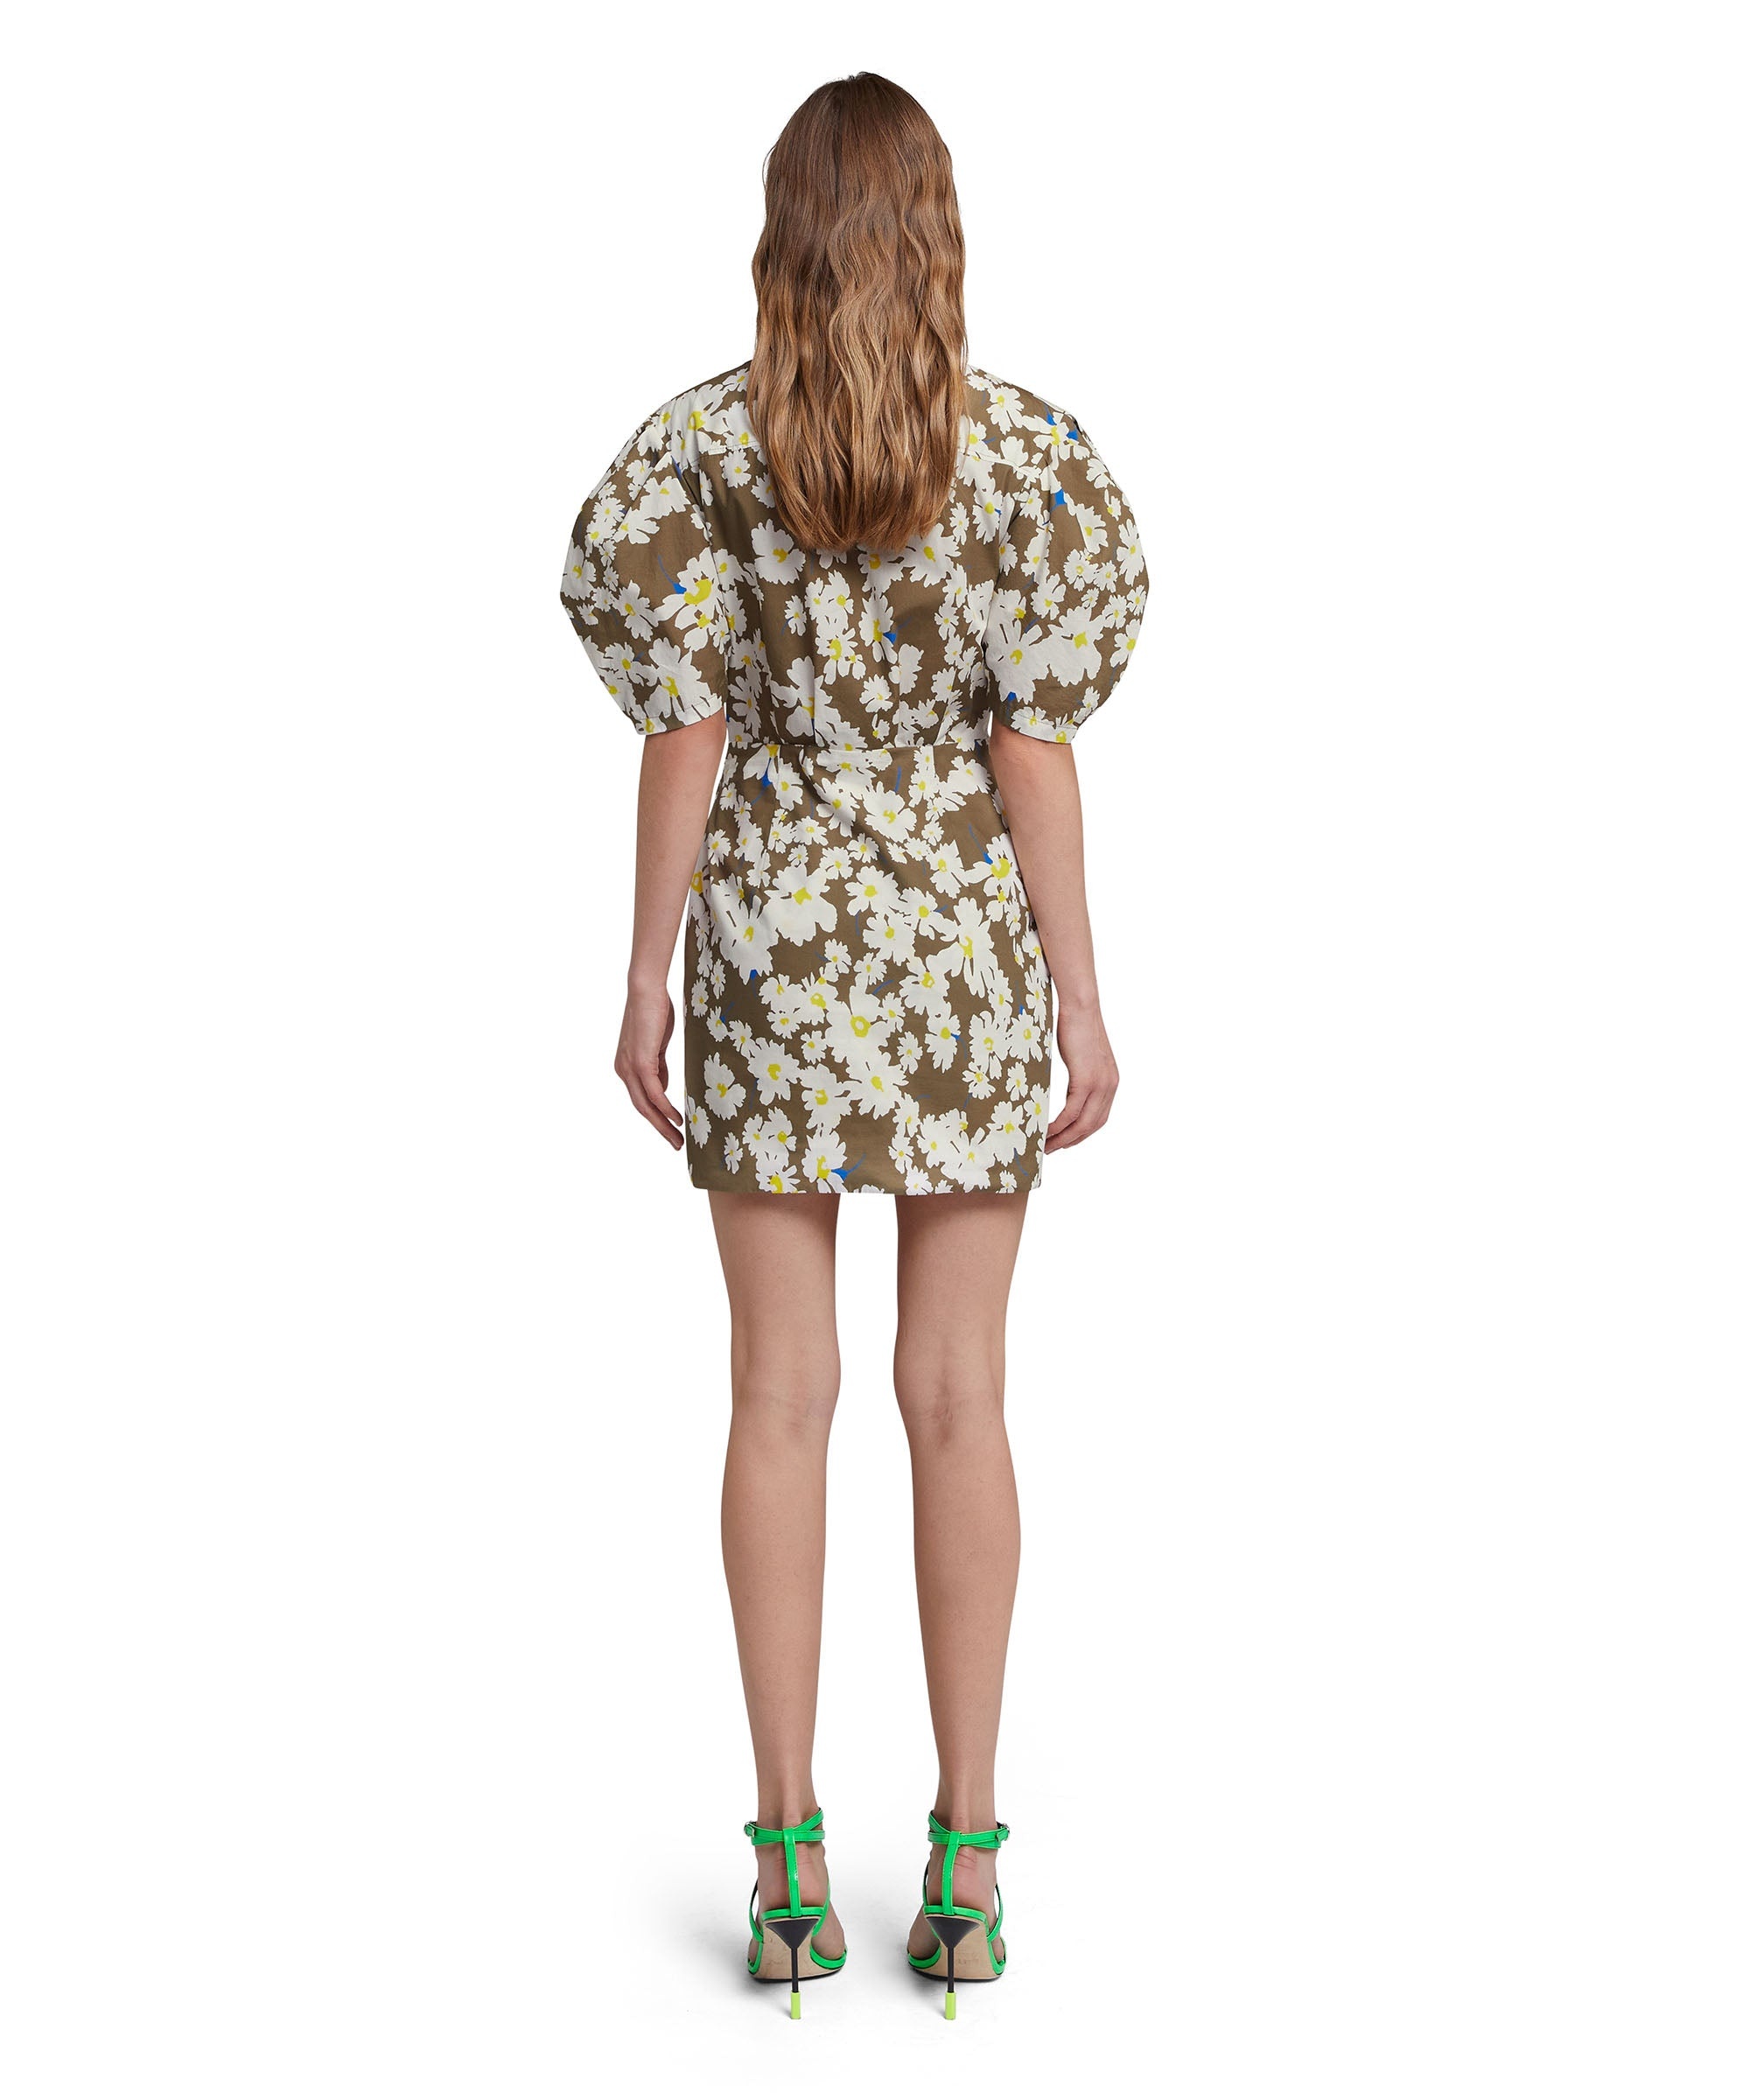 Poplin short draped dress with daisy print - 3